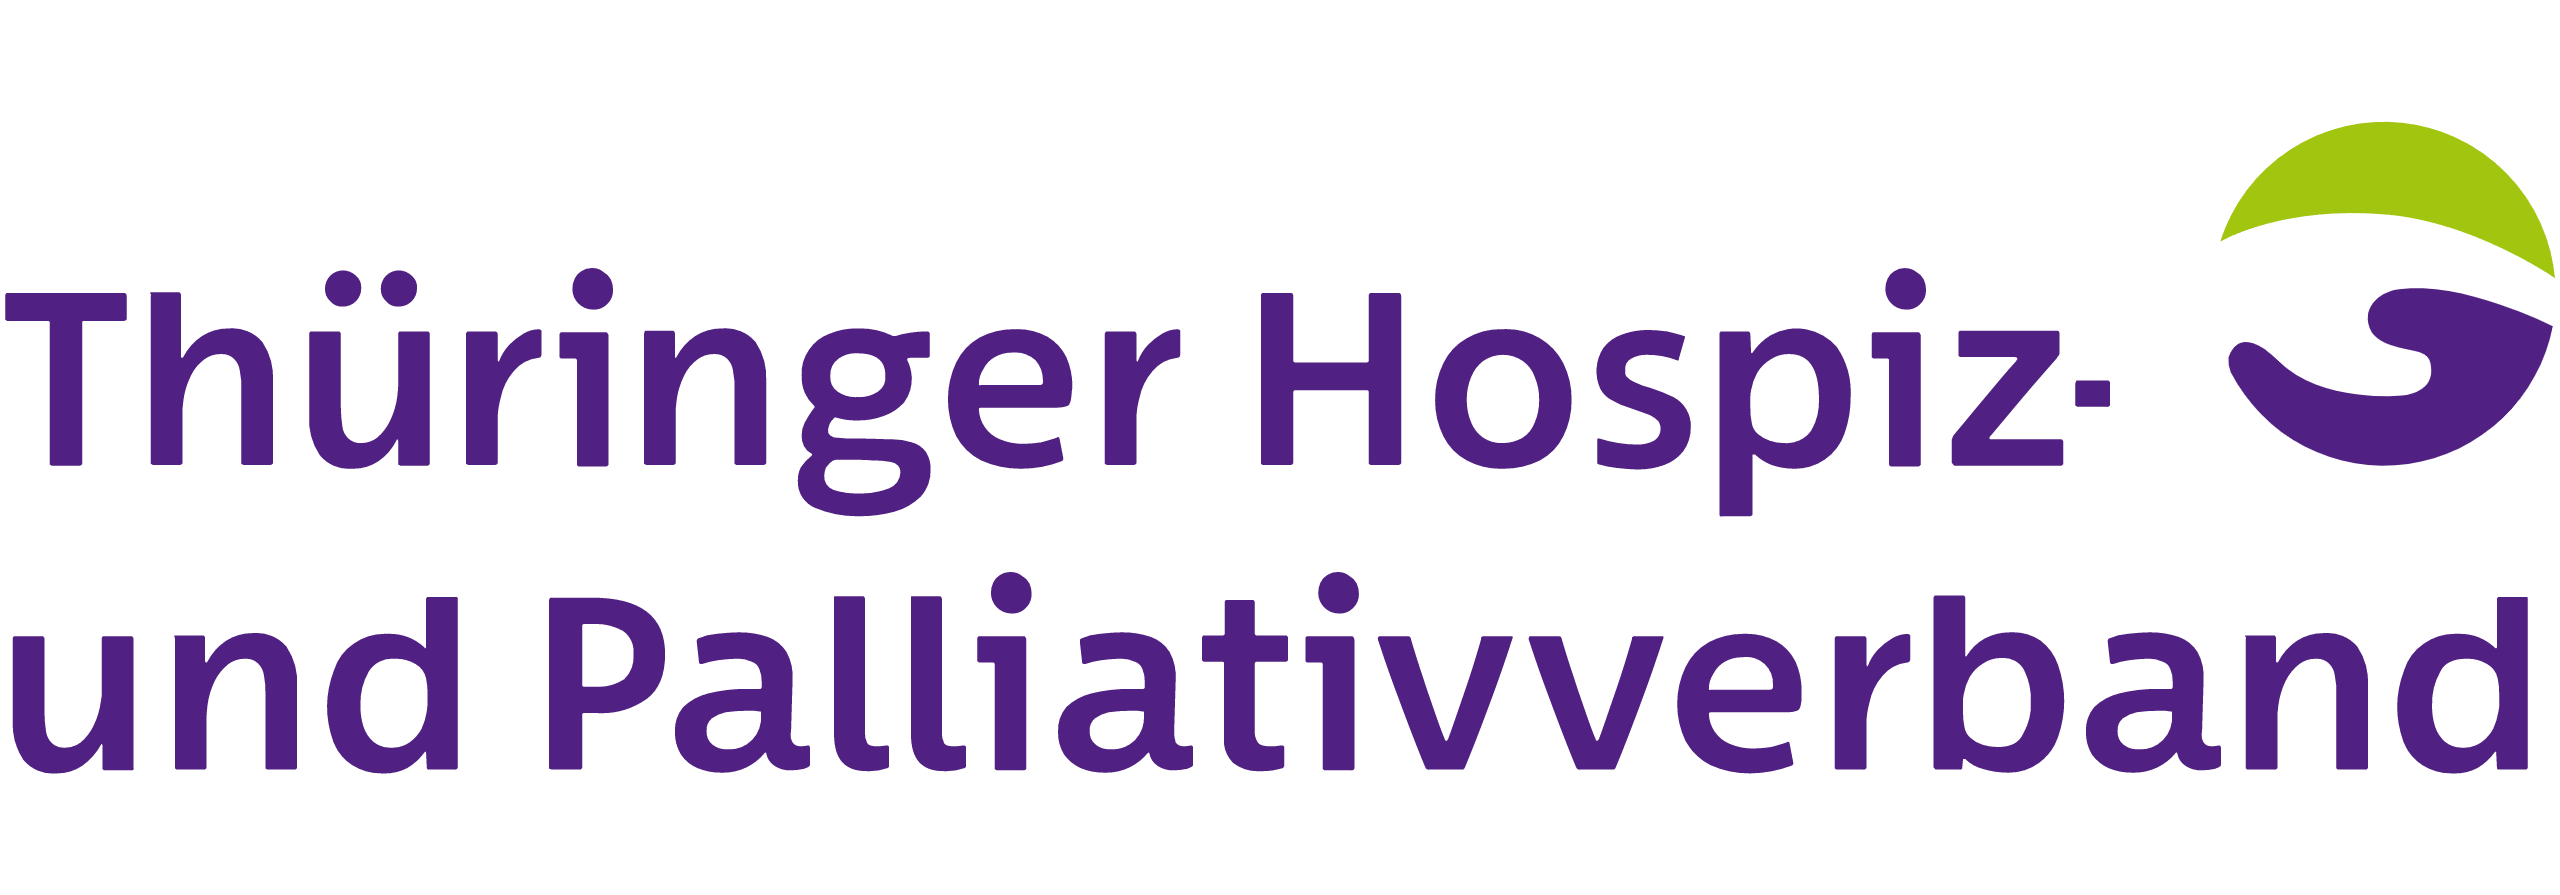 Zur Homepage des Thüringer Hospiz- und Palliativverbandes